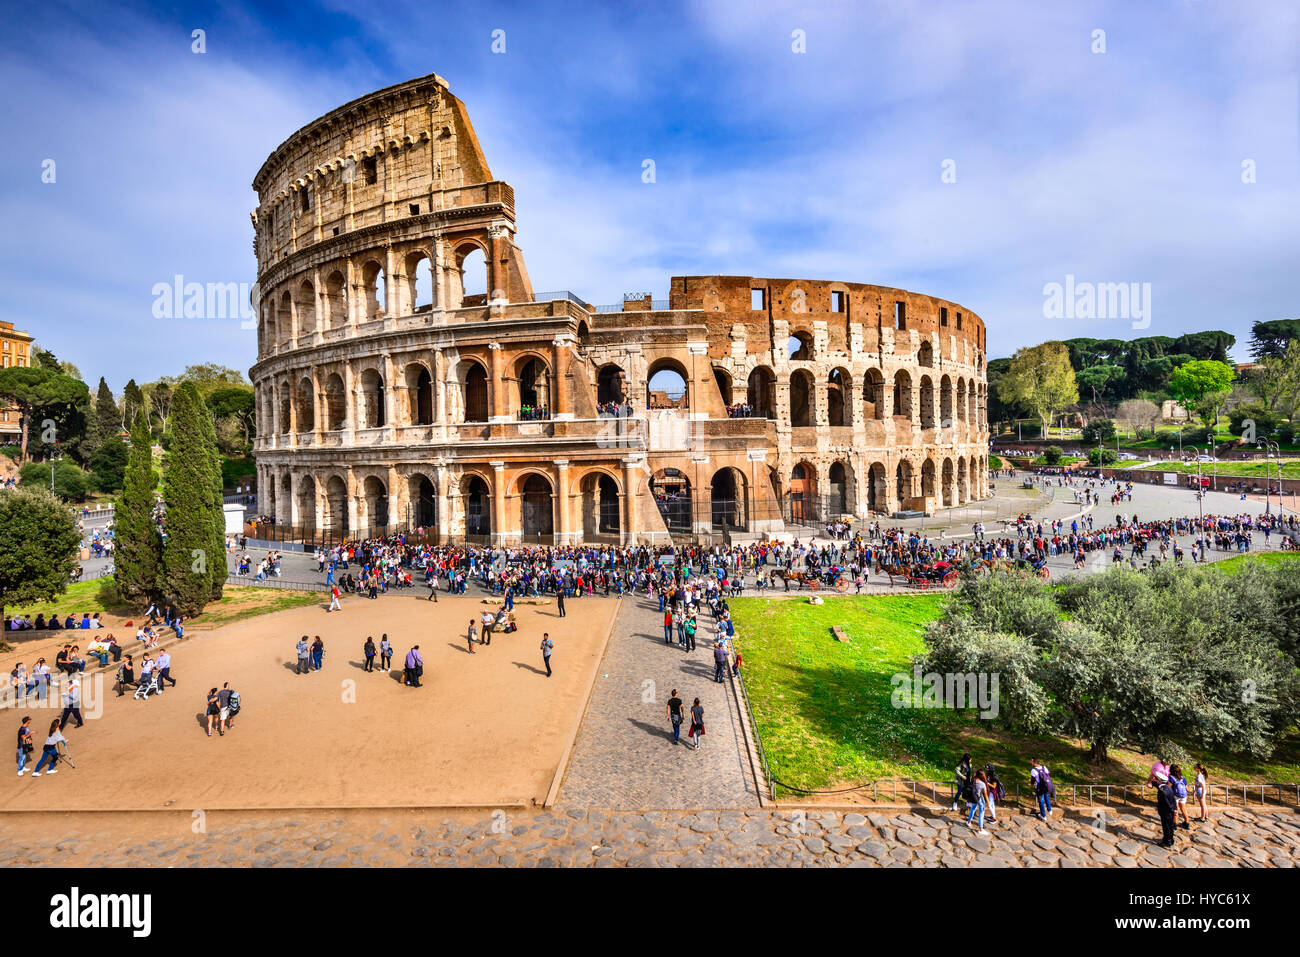 Roma, Italia - 3 April 2016: Colosseo (Colosseo), l'anfiteatro per combattimenti di gladiatori nell antica Roma, impero romano. Foto Stock